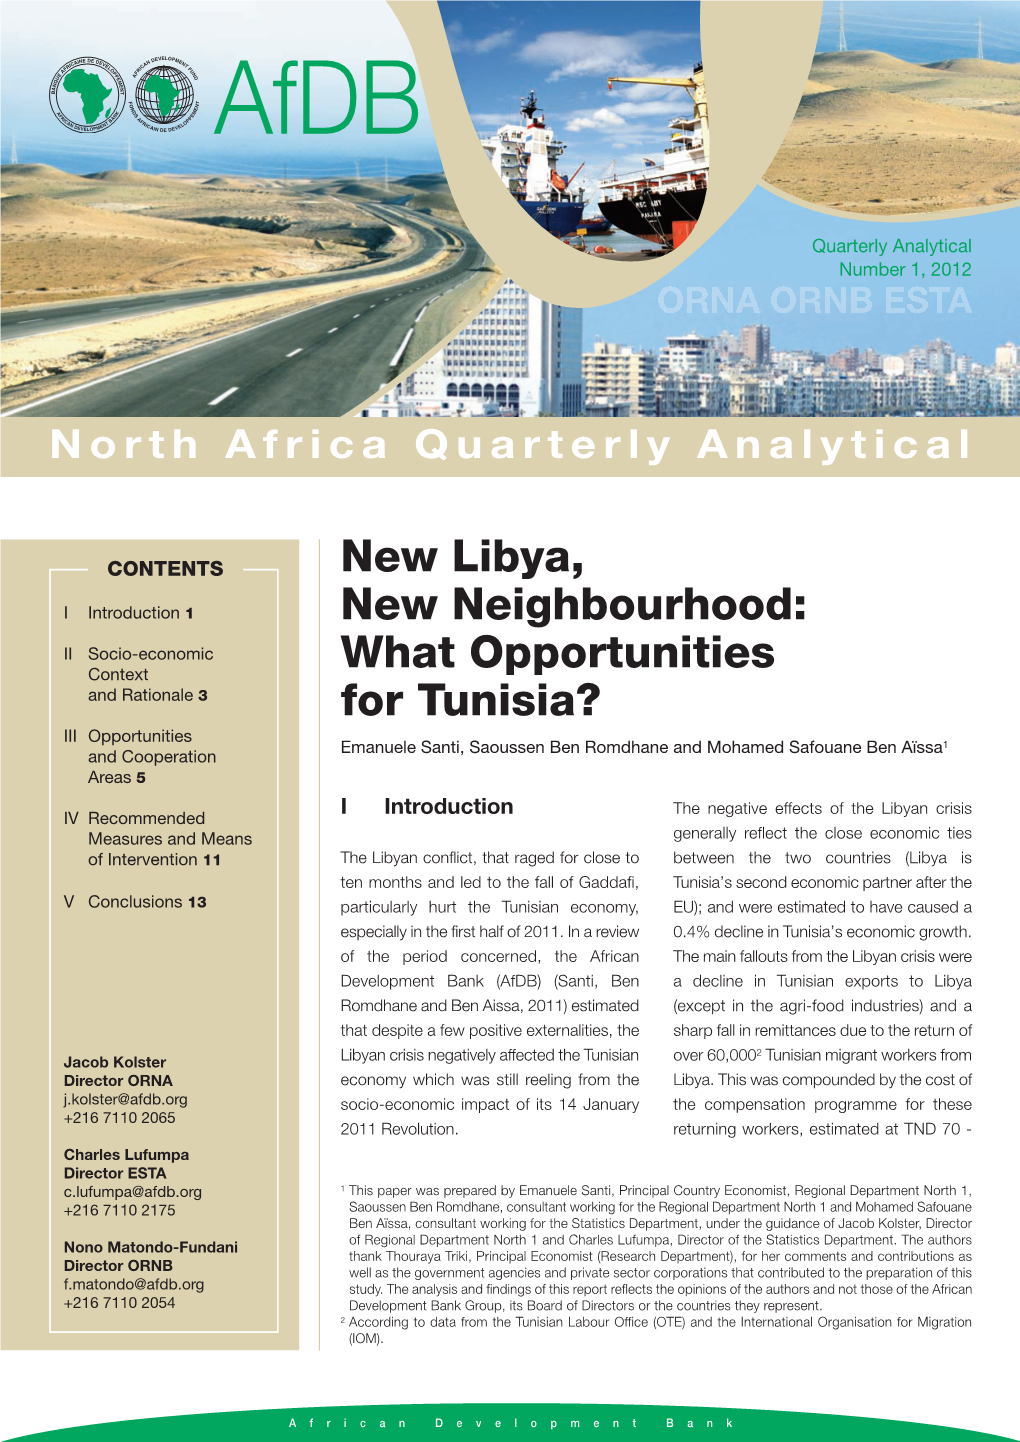 New Libya, New Neighbourhood